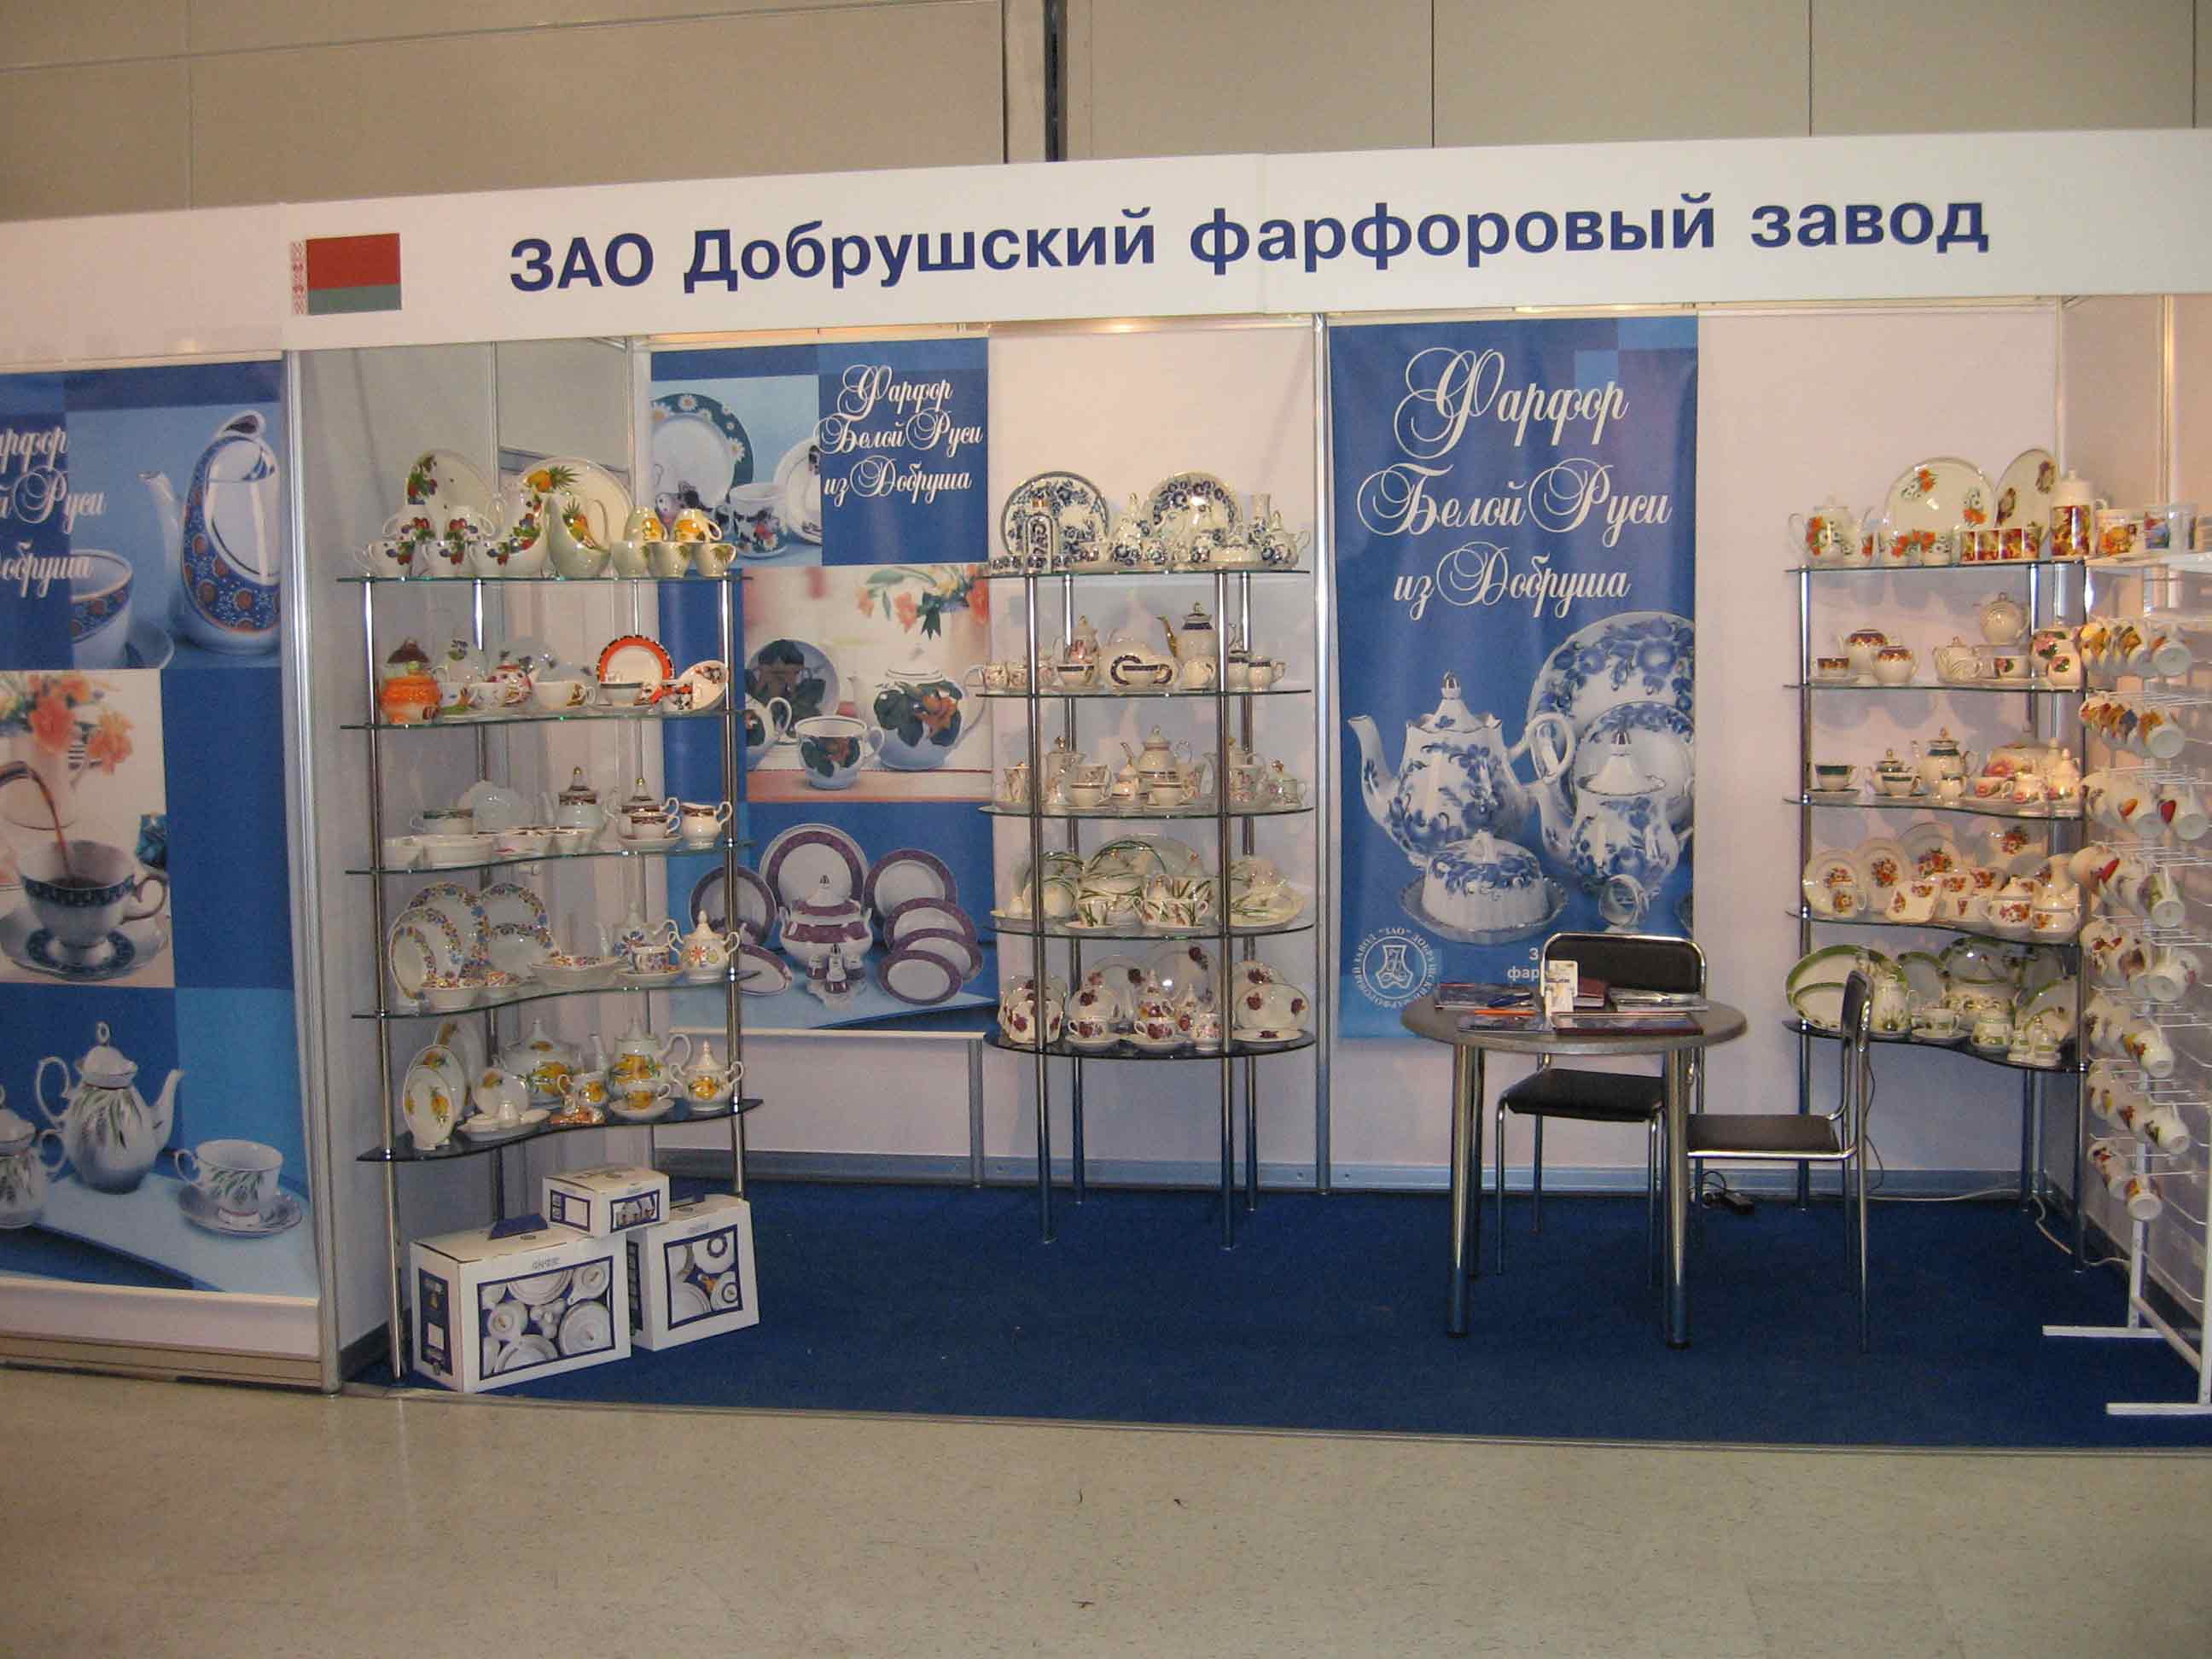 Выставочный стенд Добрушского фарфорового завода